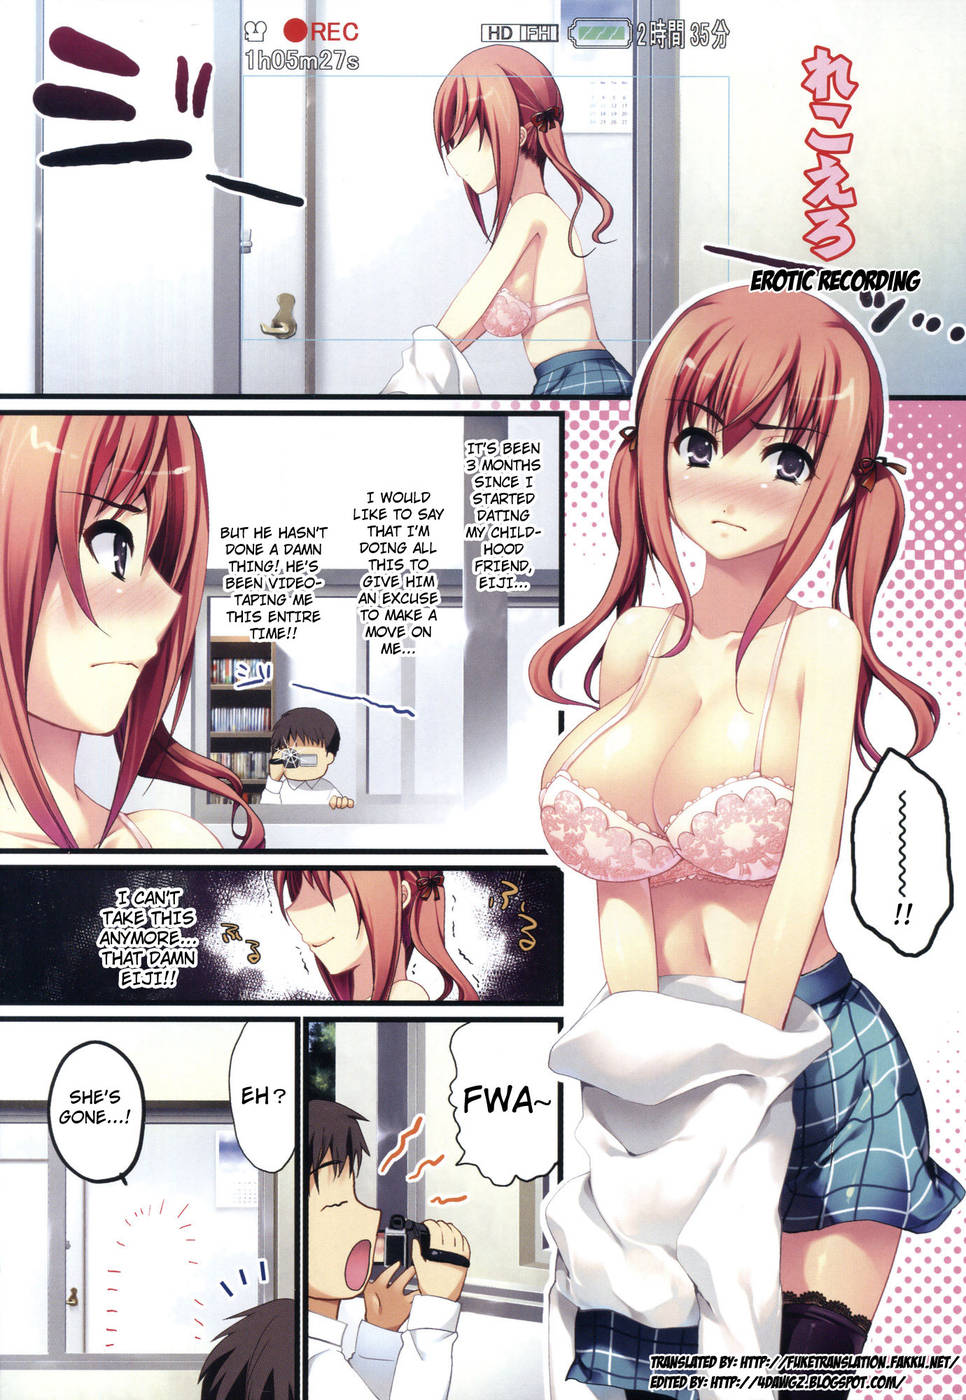 Hentai Manga Comic-Hazukashii Chibusa-Chapter 2: Erotic Recording-1